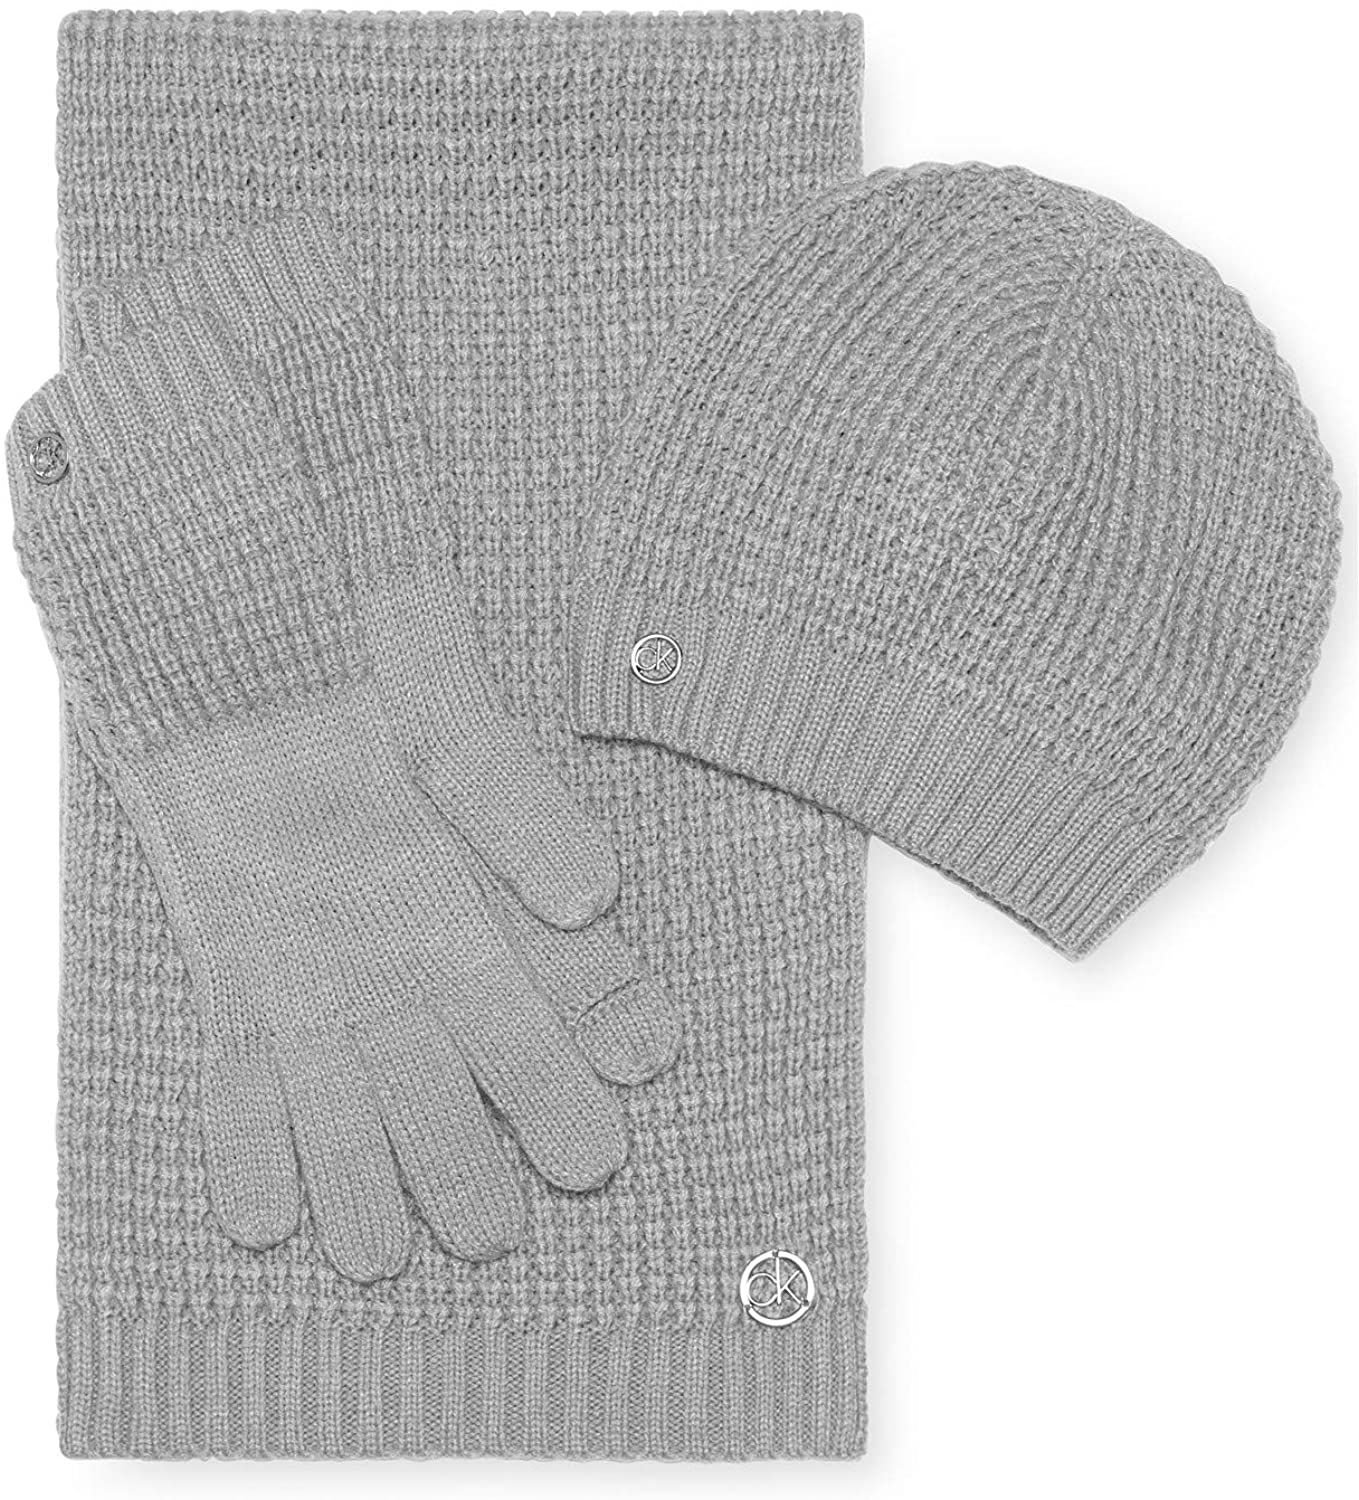 Calvin Klein Waffle Grey/Silver Women's 3 Piece Gift Set (Hat, Scarf & Gloves) 